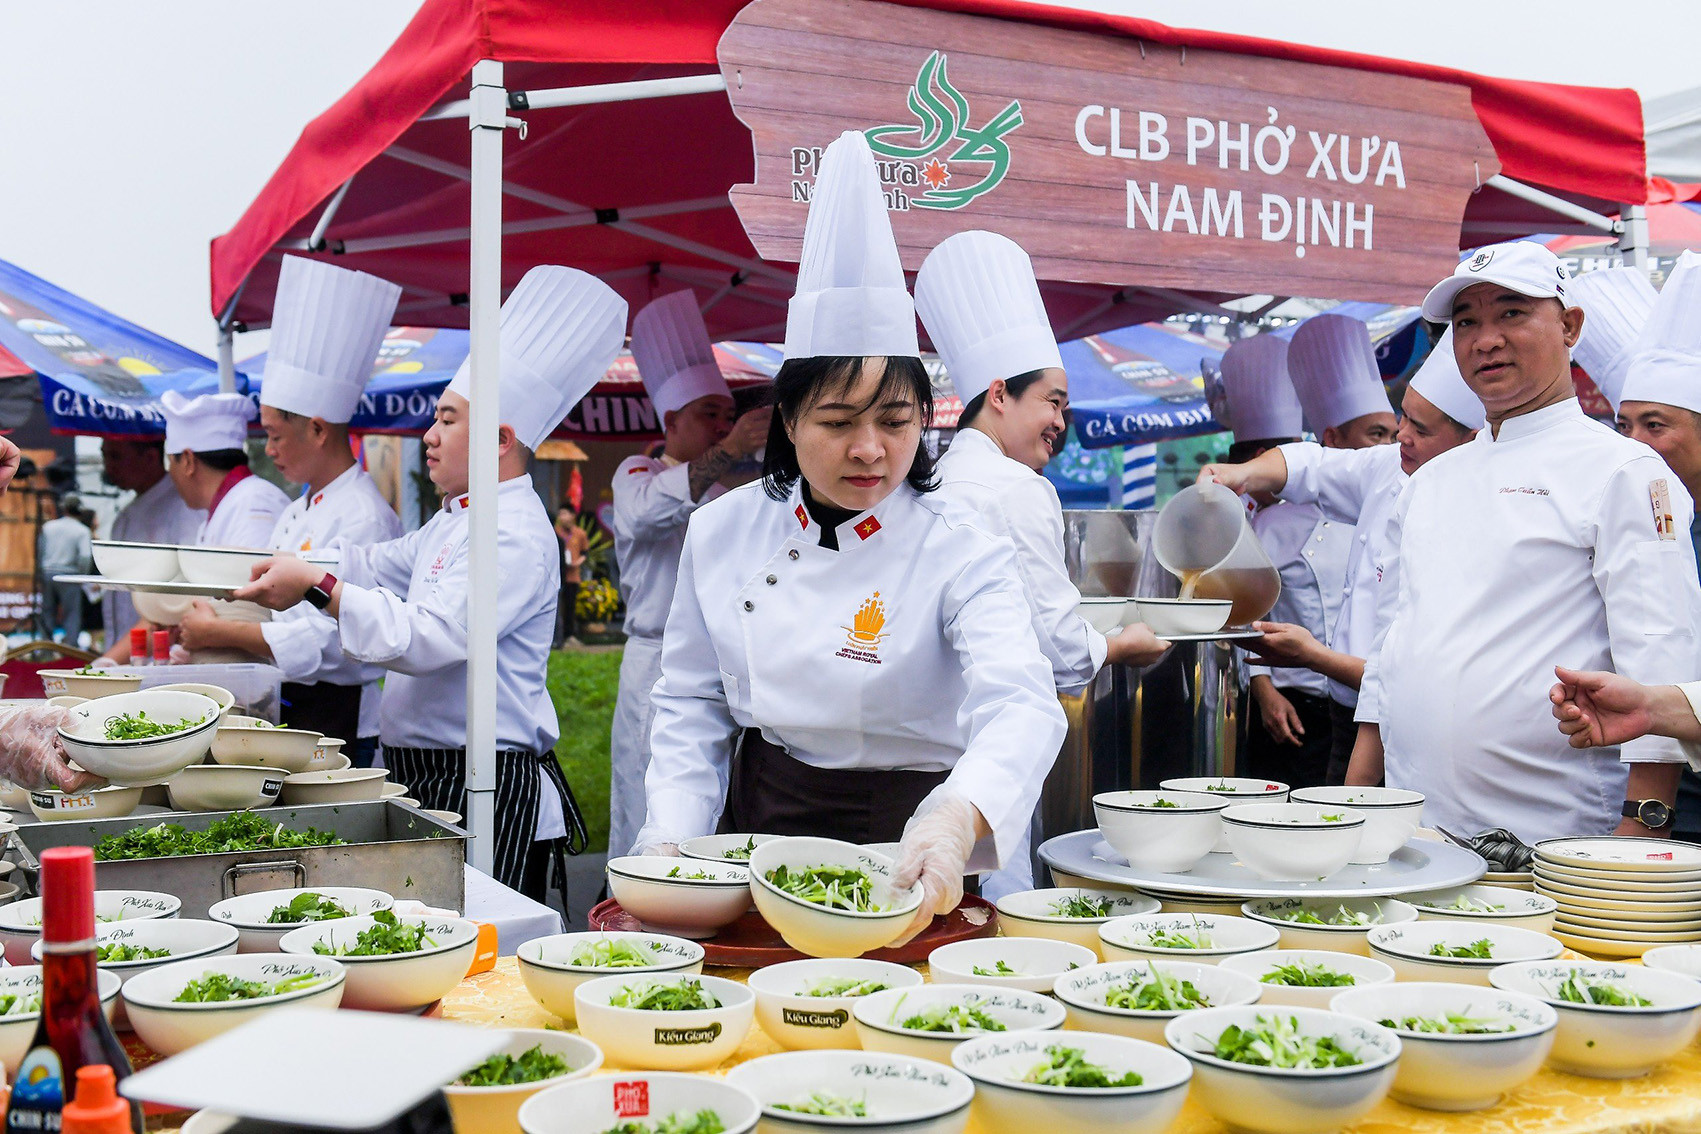 Bát phở xưa Nam Định trong lễ hội